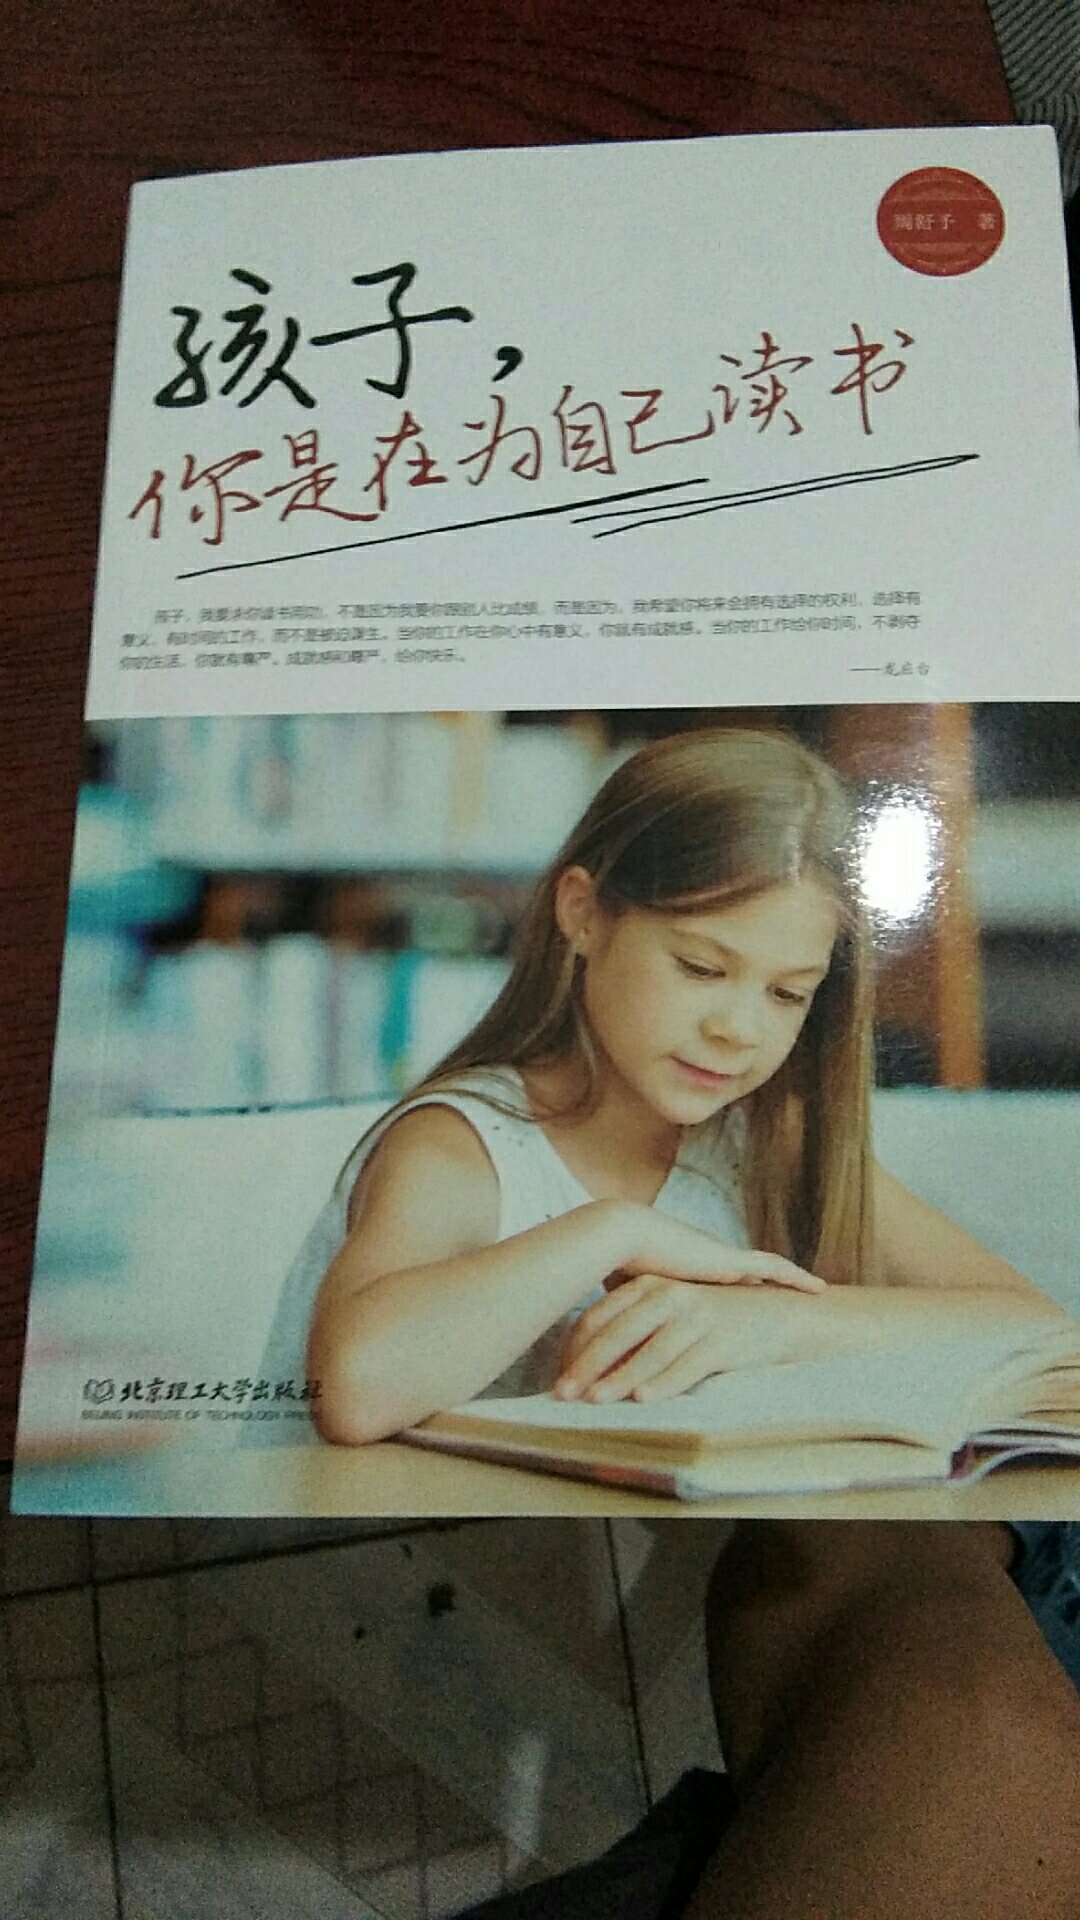 女儿马上步入青春期了，买了好几本这段时期看的书希望能给她帮助。